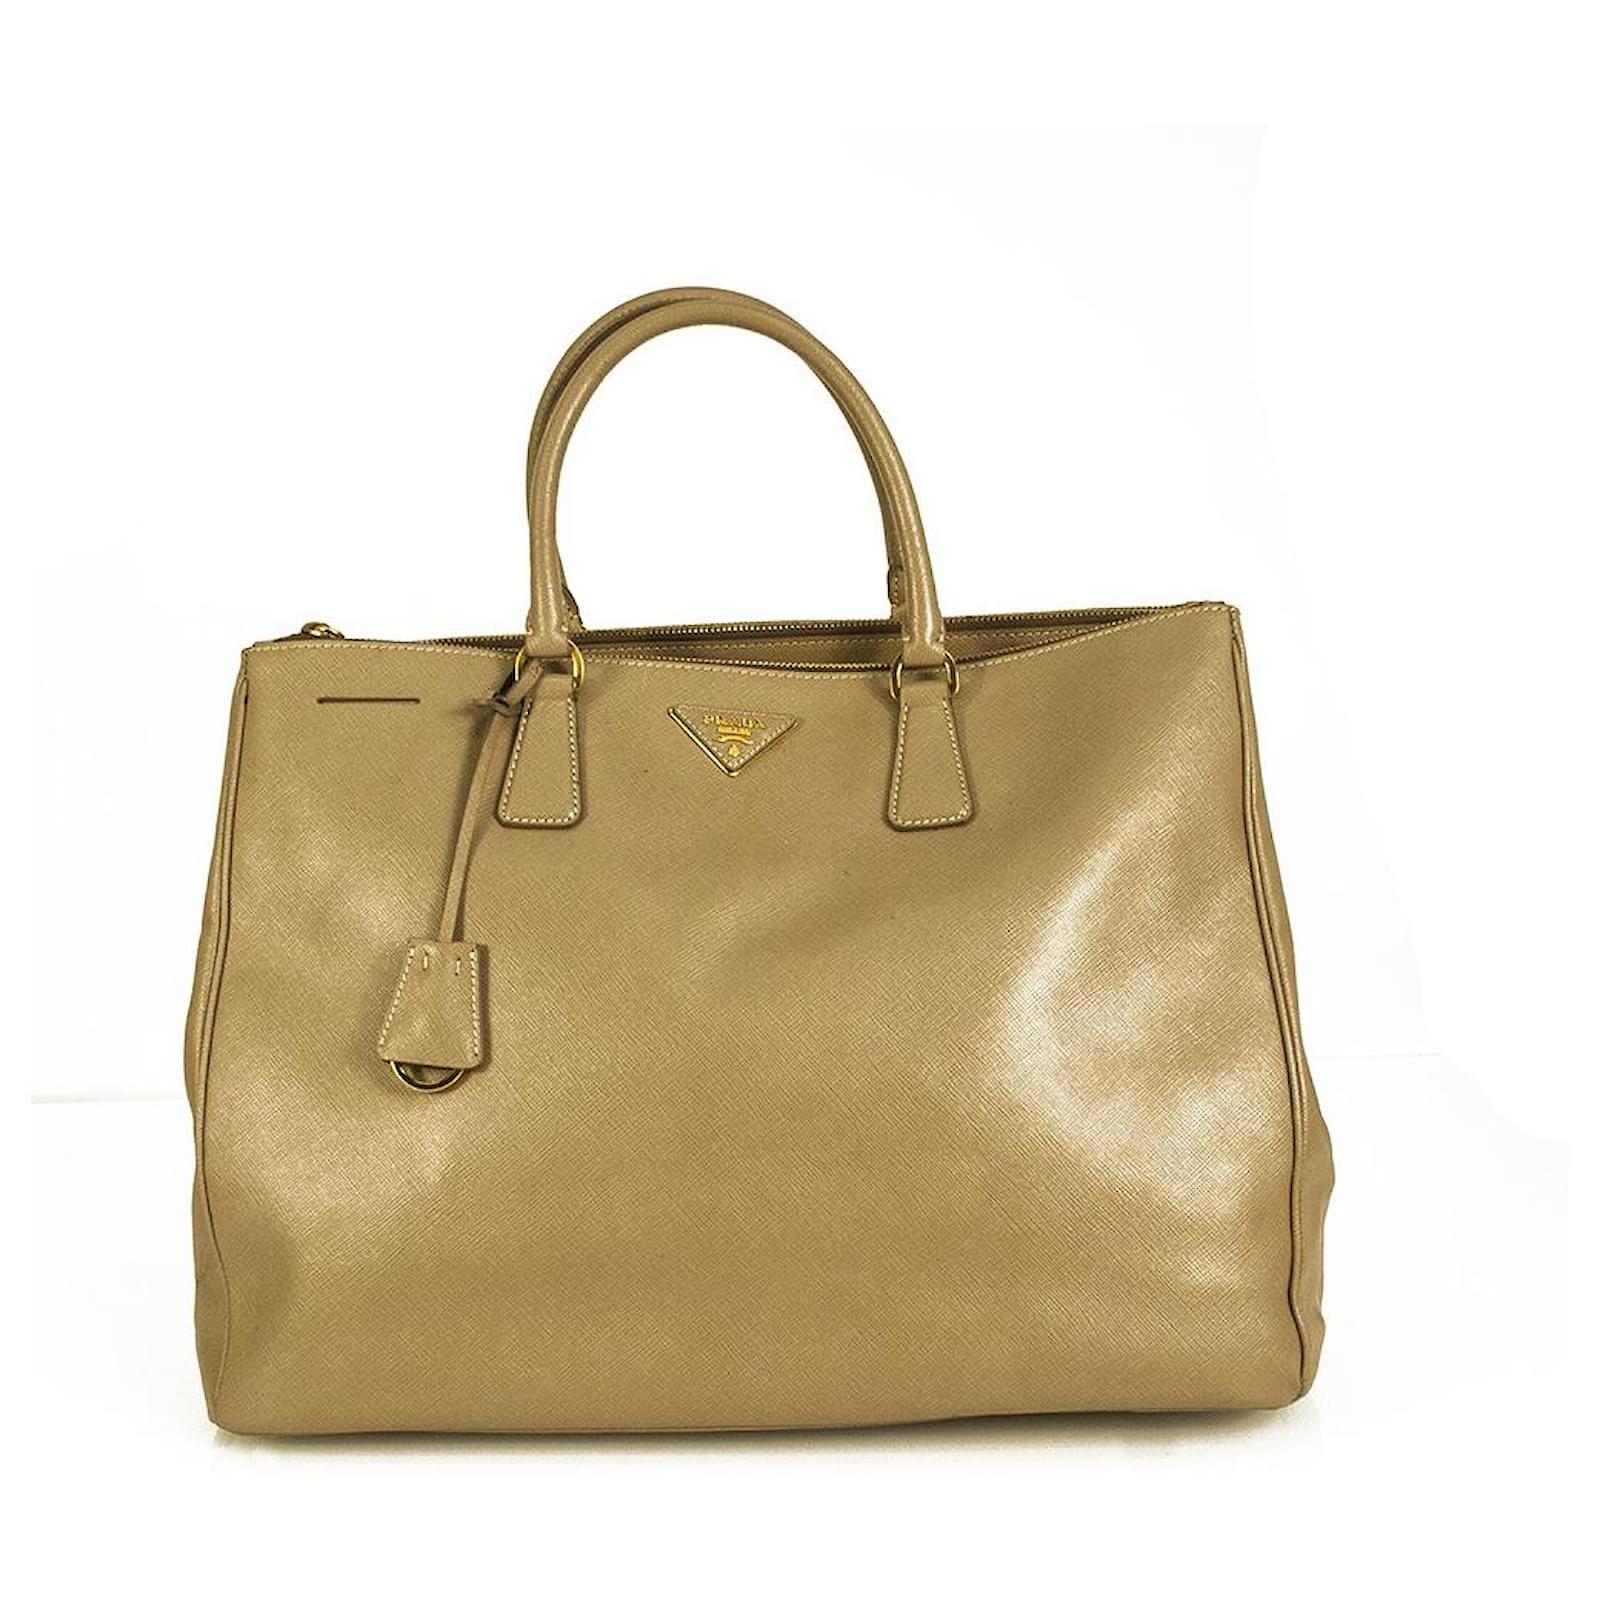 XL beige shopper bag